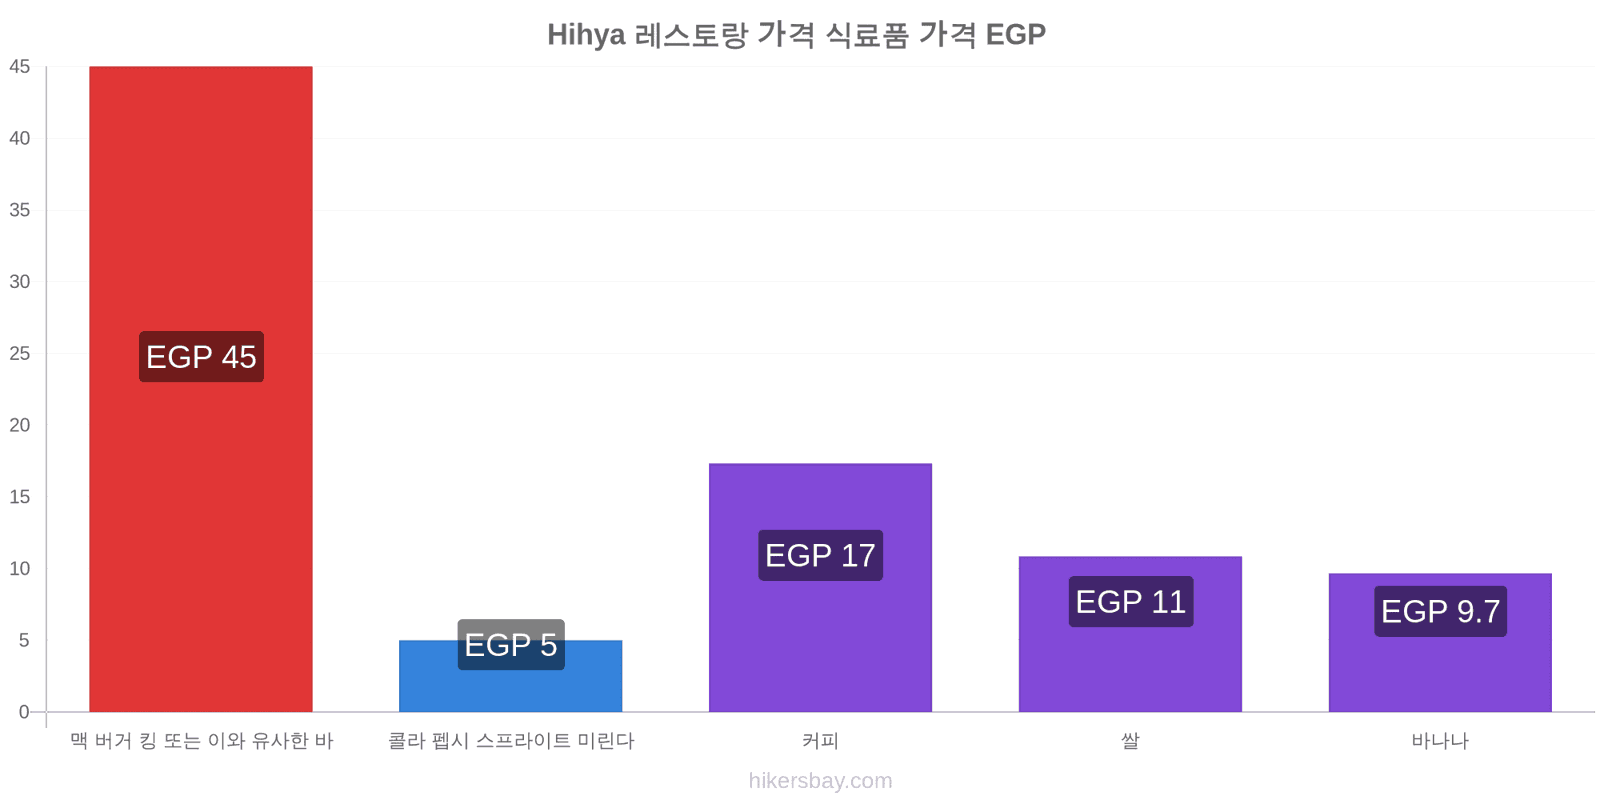 Hihya 가격 변동 hikersbay.com